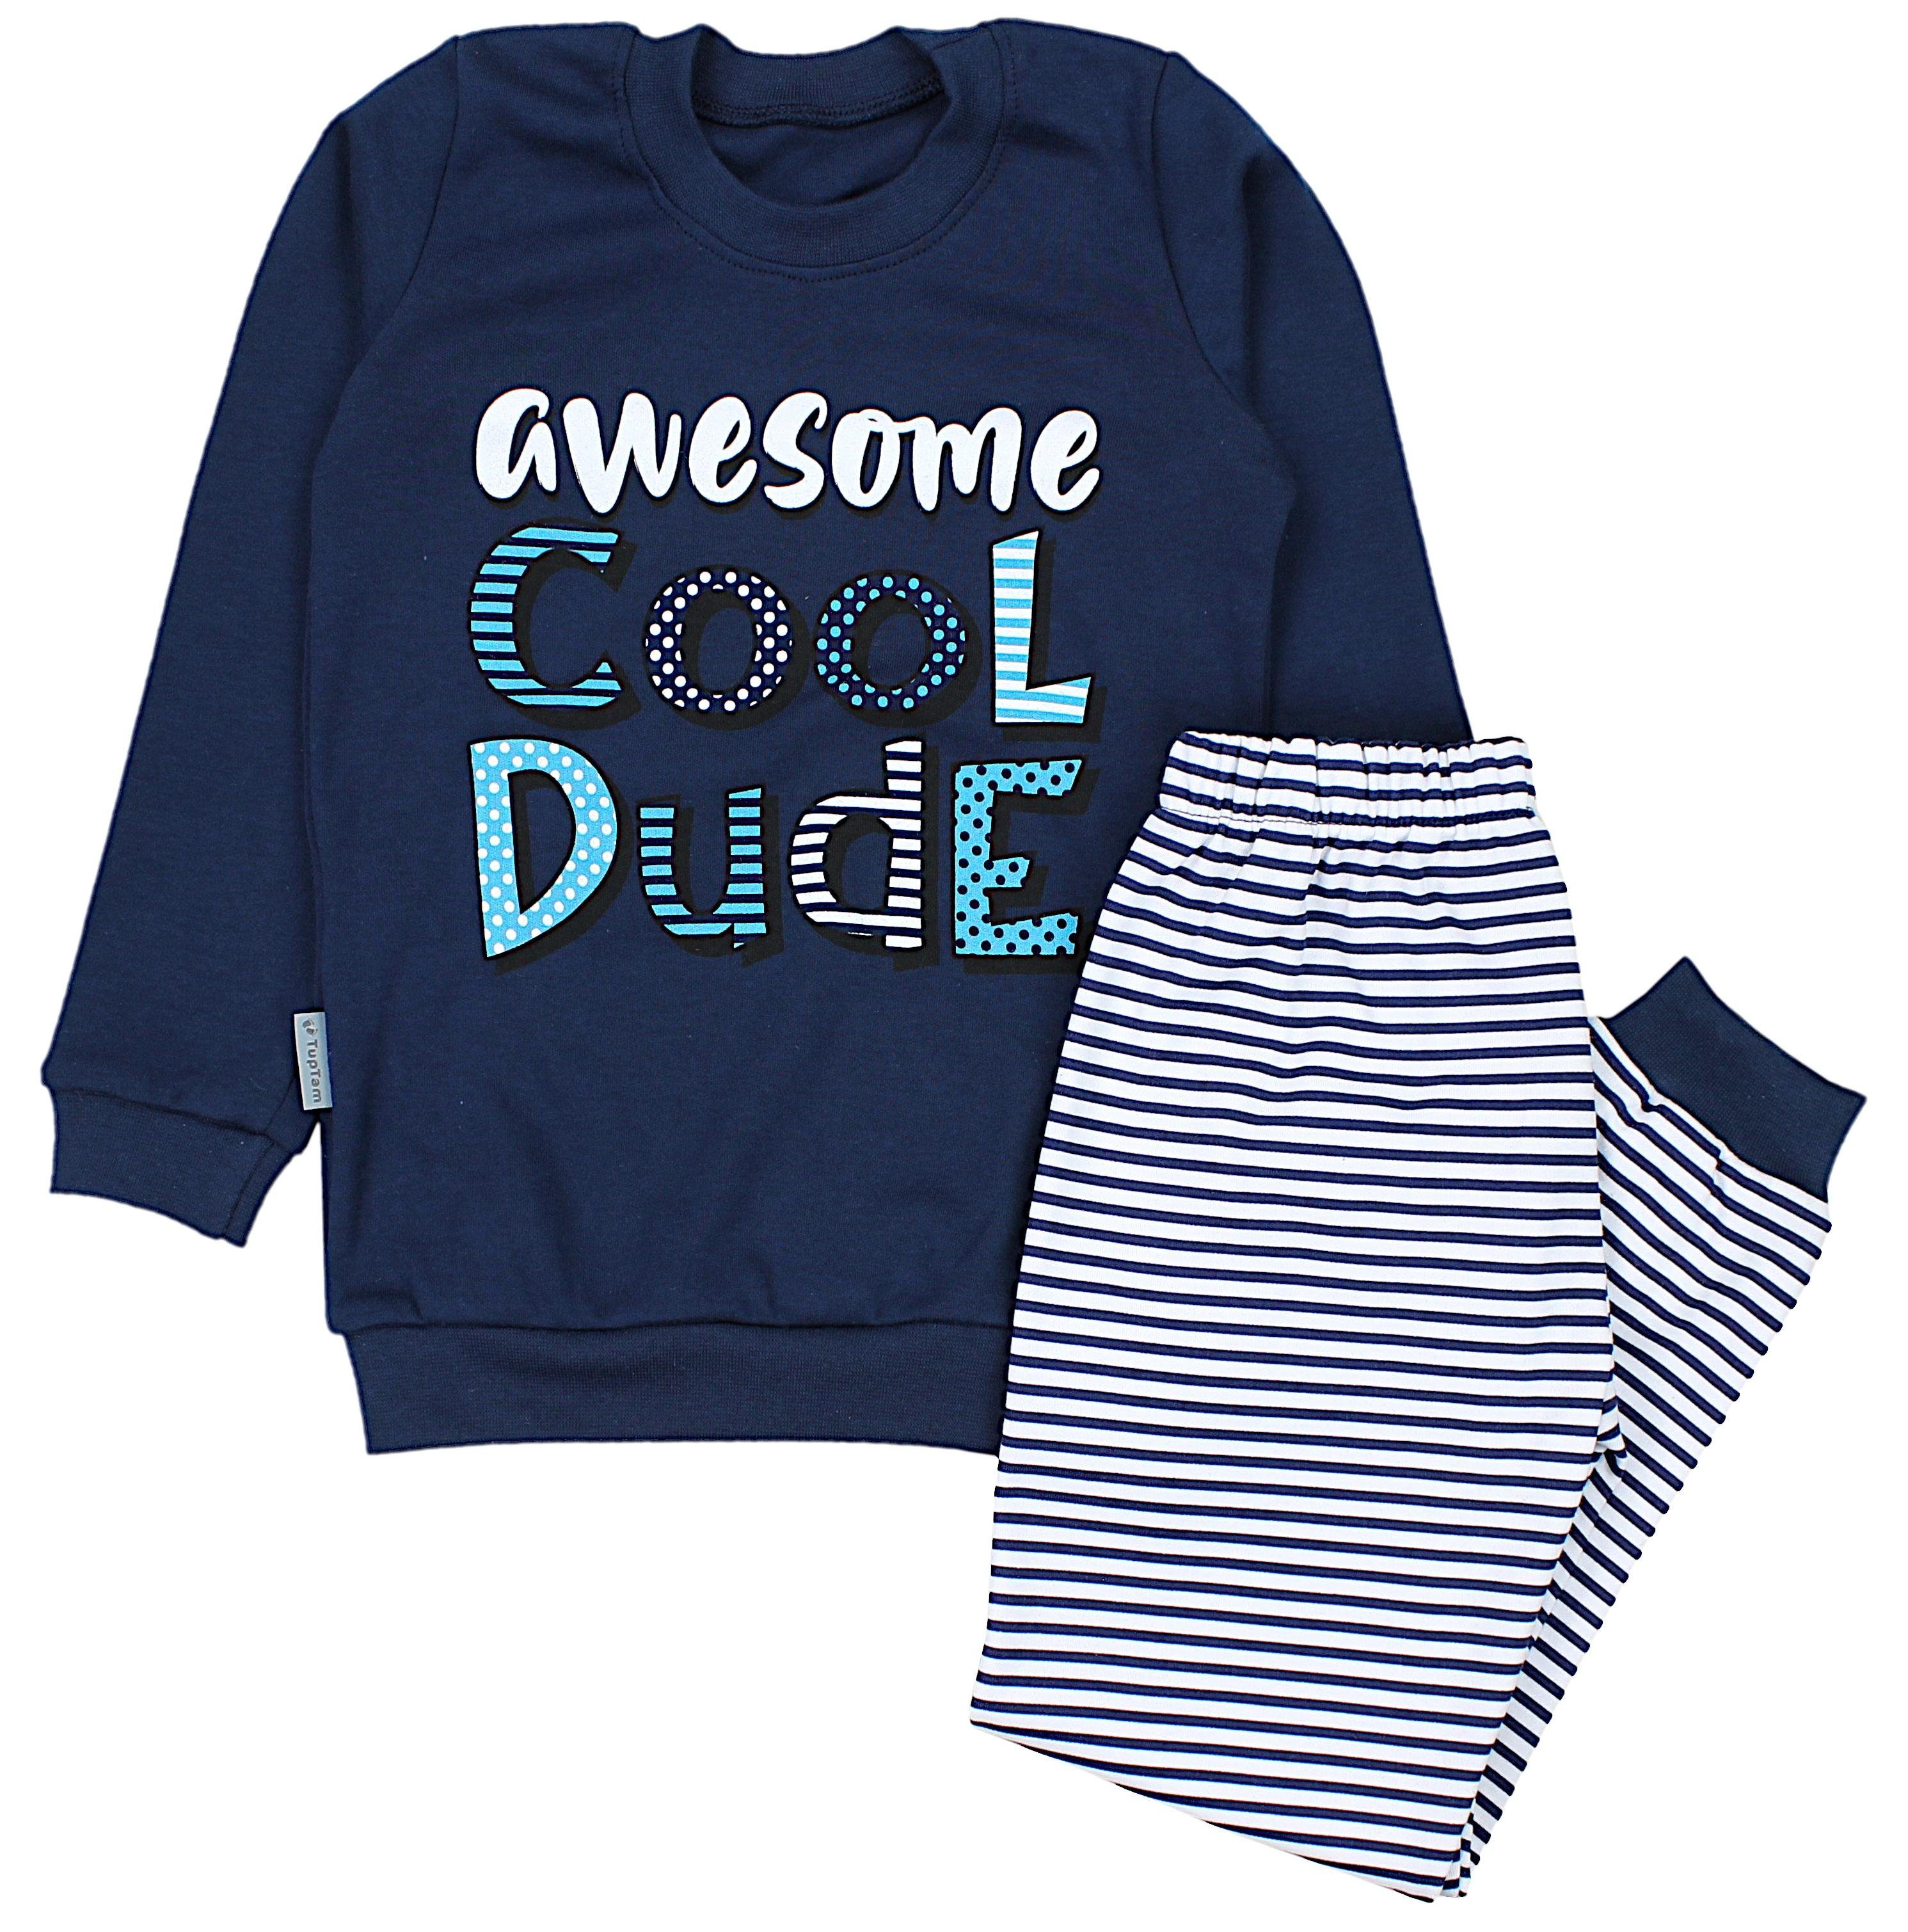 TupTam Schlafanzug Kinder Jungen Pyjama Schlafanzug Set Langarm Nachtwäsche 2-teilig Cool Dude Blau / Streifen Dunkelblau